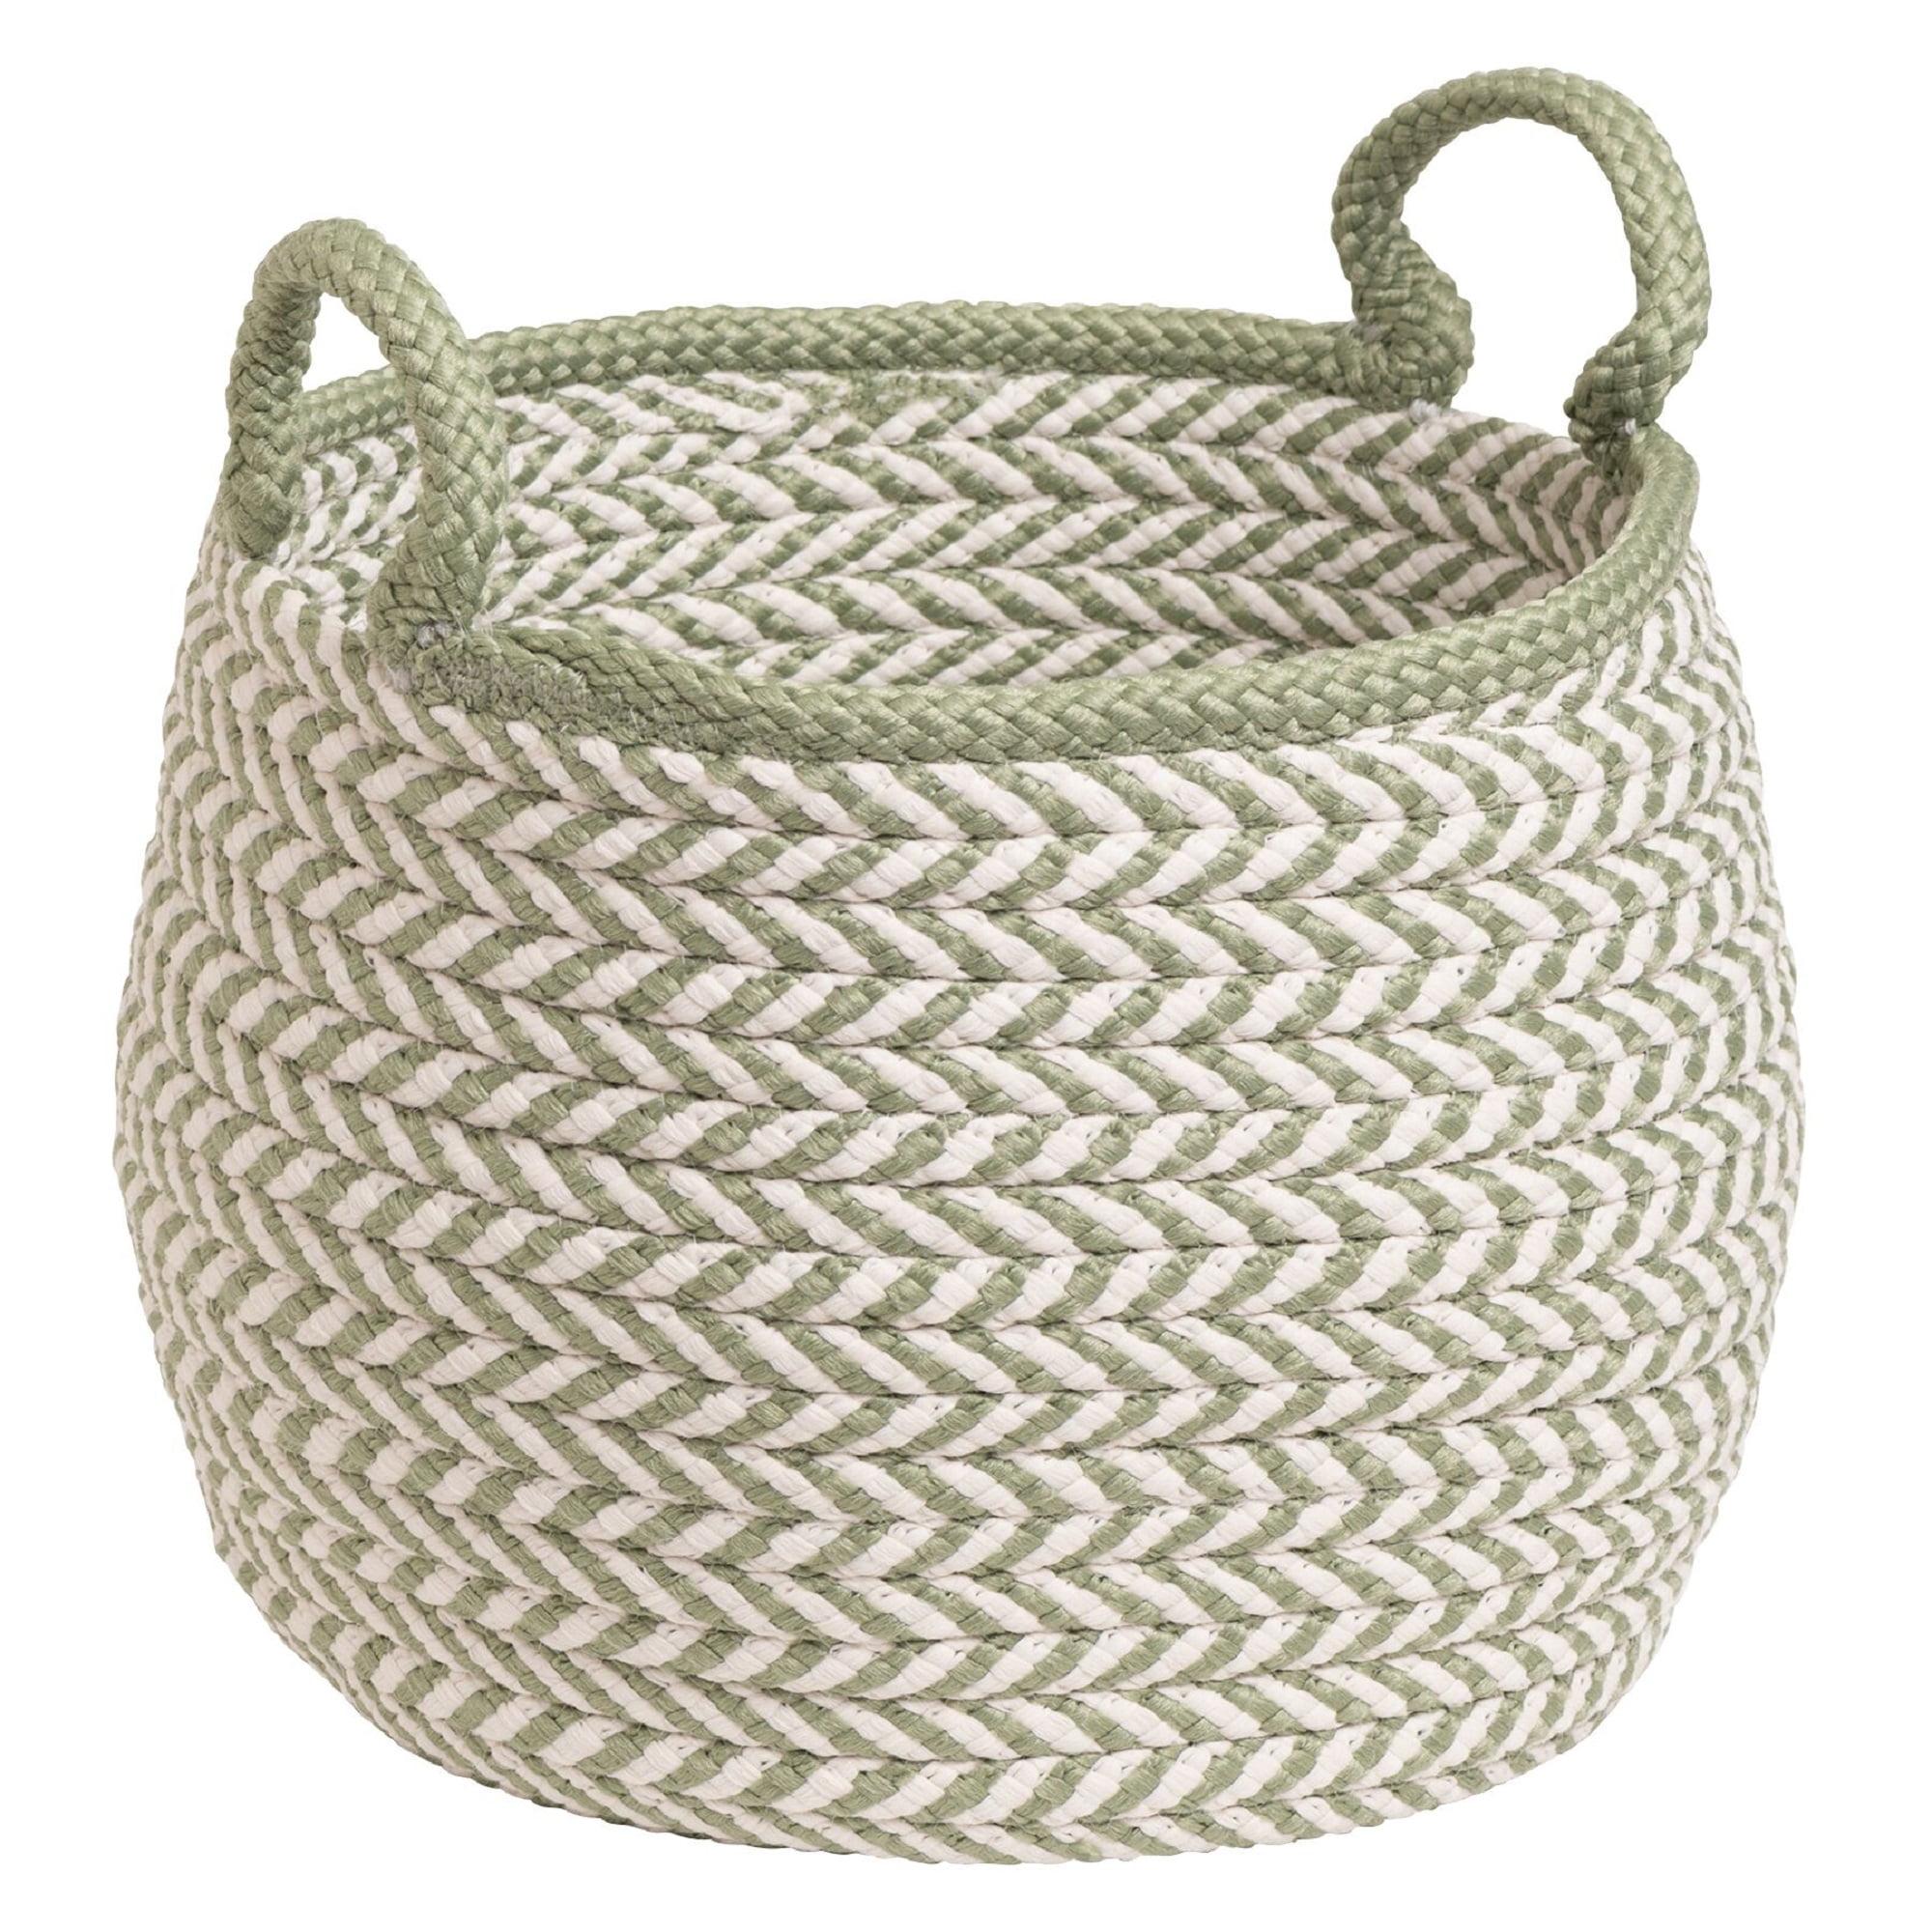 Chevron-Weave White & Green Polypropylene Basket 18"x18"x17"